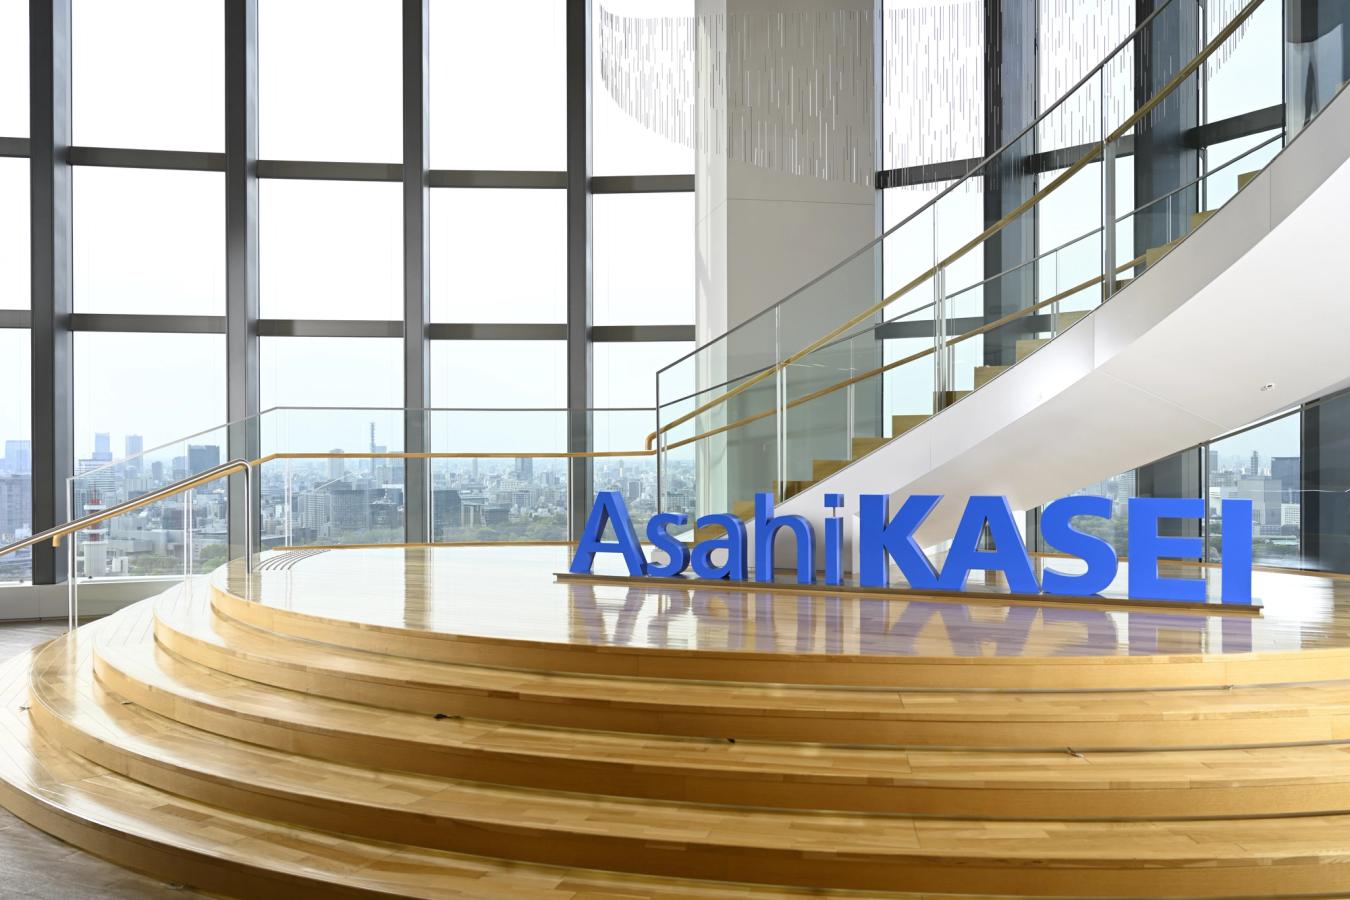 Asahi Kasei Corporation: